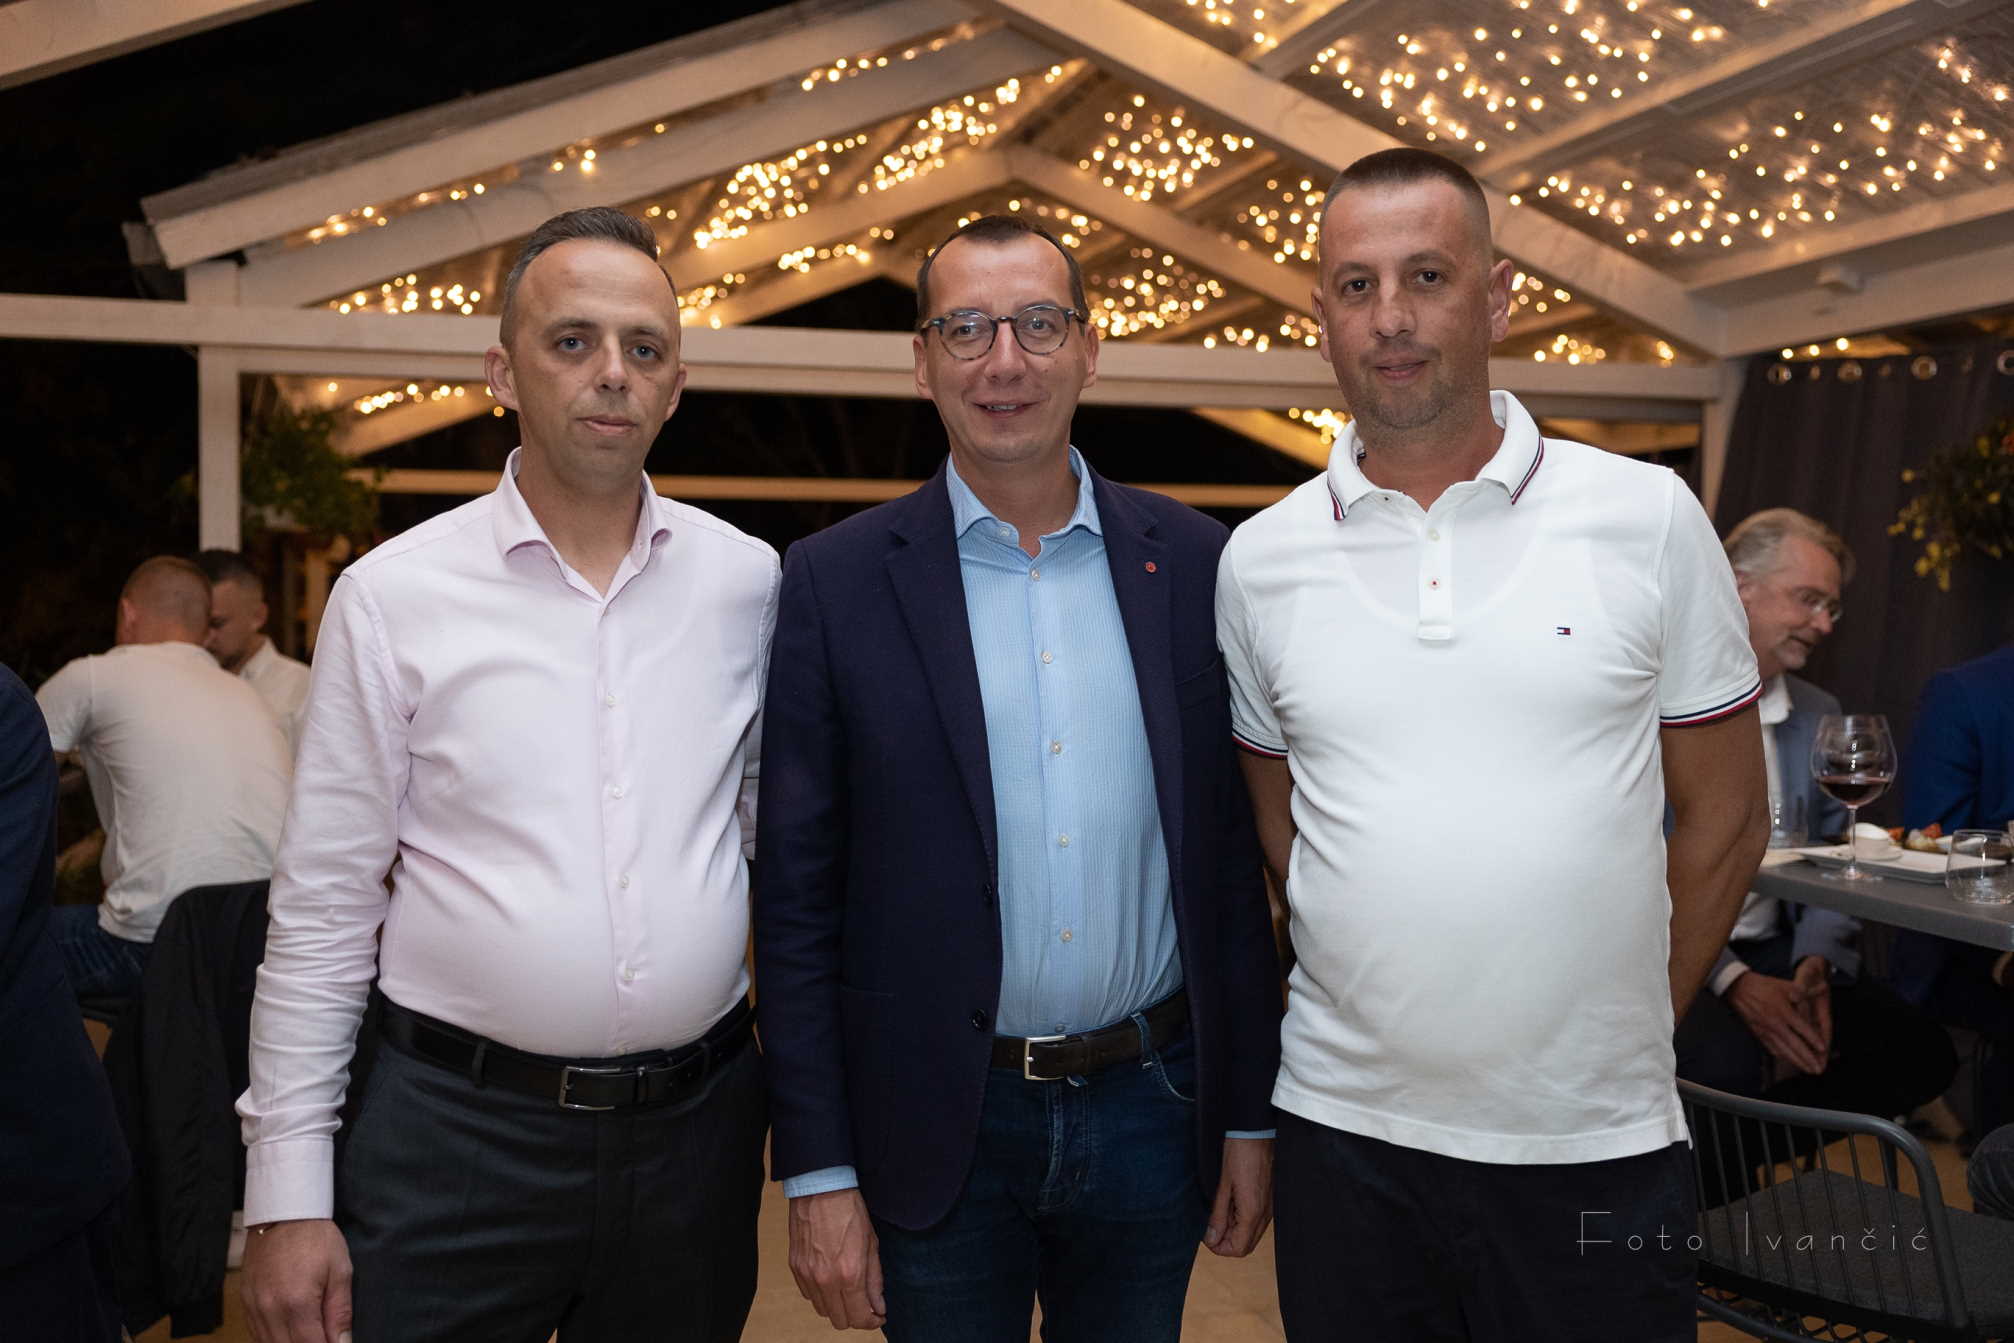 Sinoć je obitelj Gajić proslavila 47 godina svoje ugostiteljske tradicije u Faro baru u Dramlju